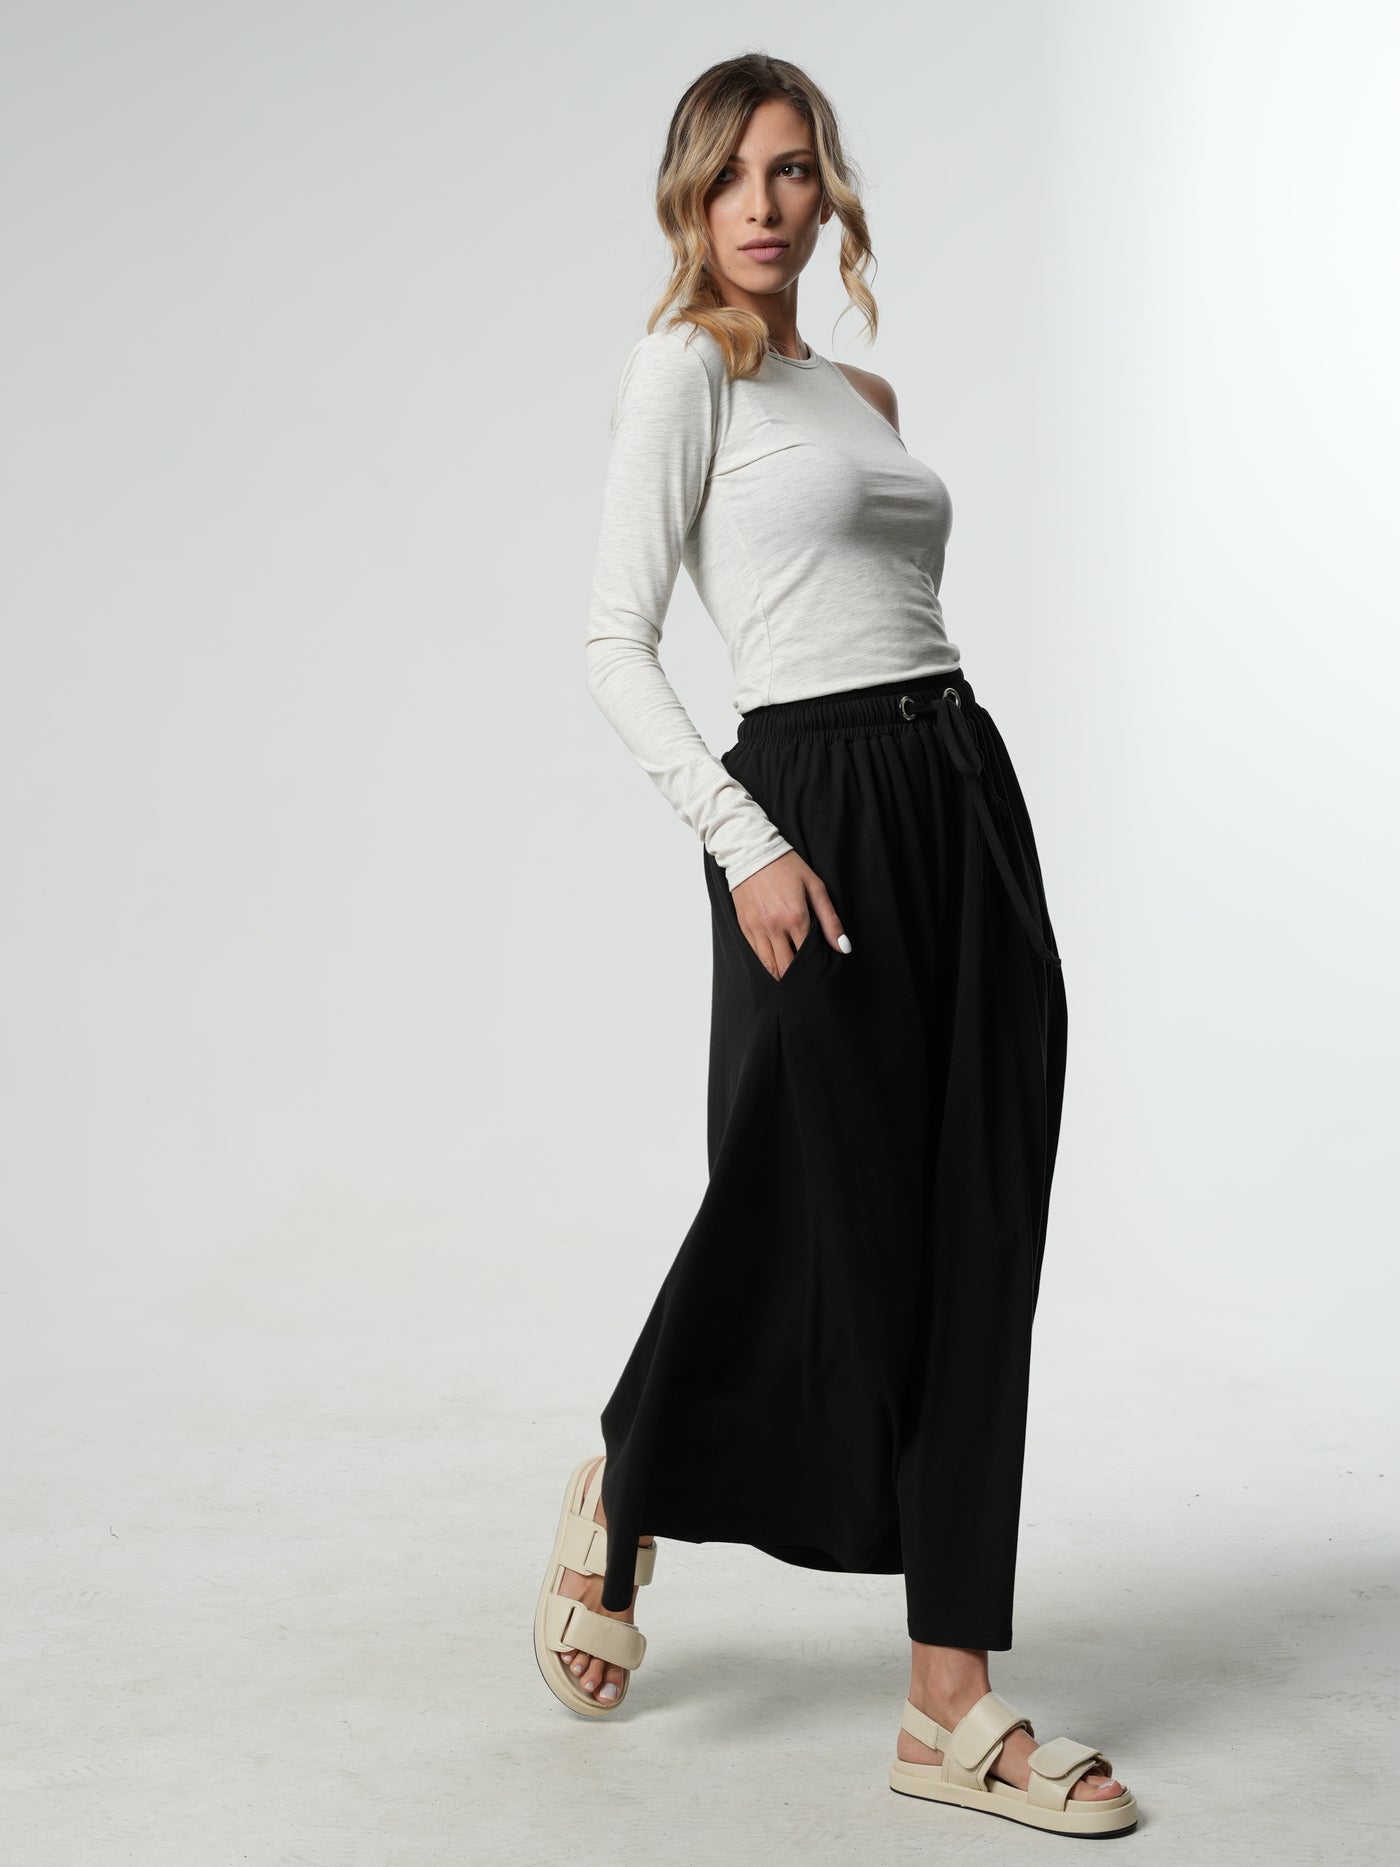 Women's Basics High Waisted Jersey Maxi Skirt